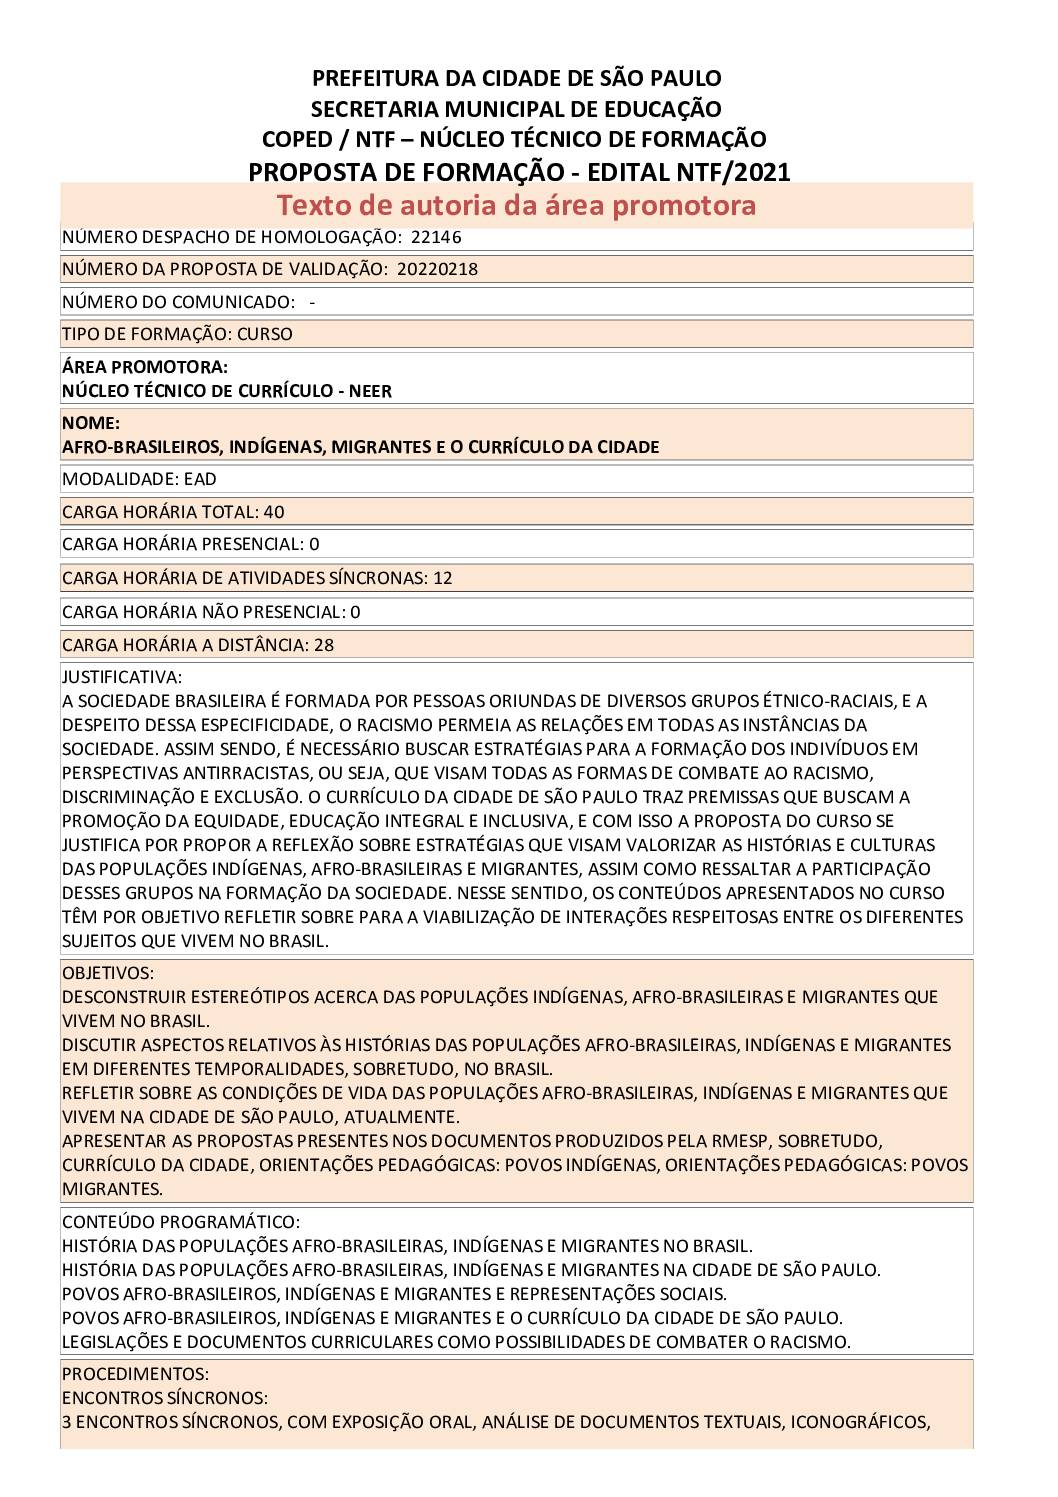 PDF com informações sobre o curso: AFRO-BRASILEIROS, INDÍGENAS, MIGRANTES E O CURRÍCULO DA CIDADE